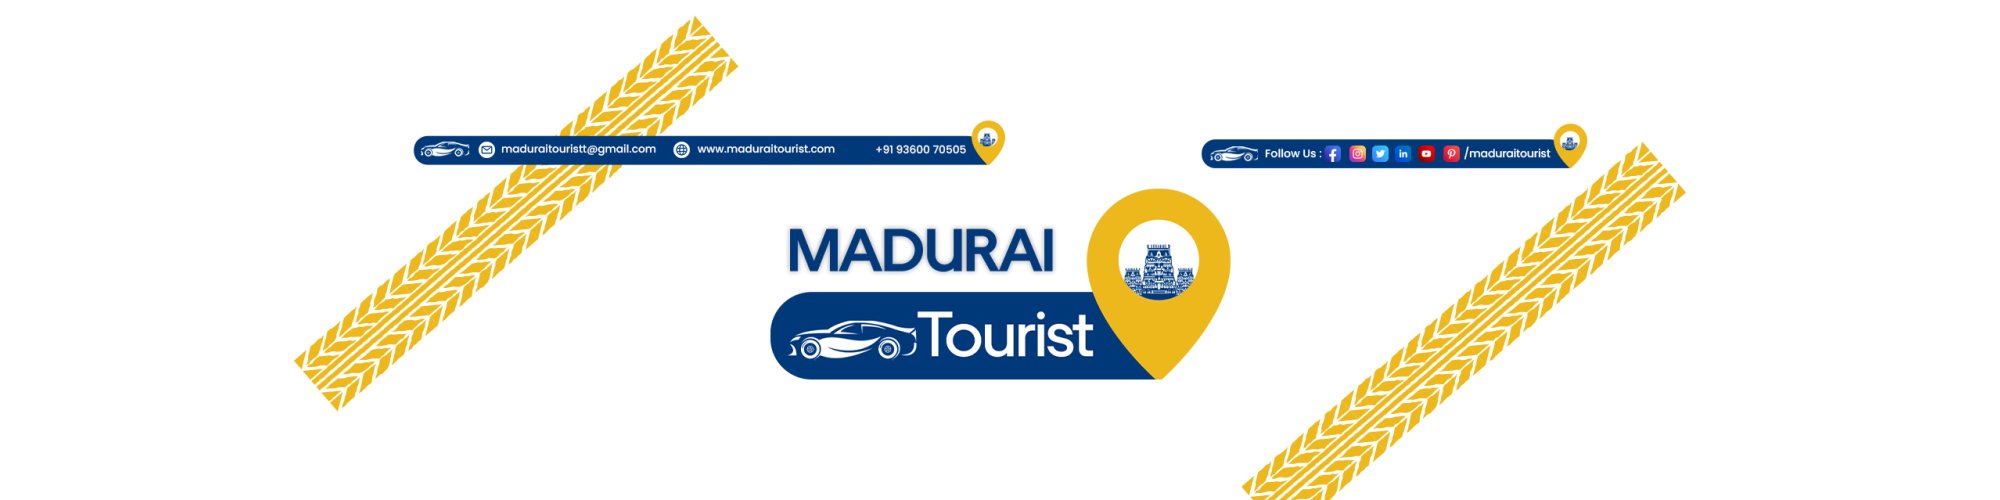 Madurai Tourist